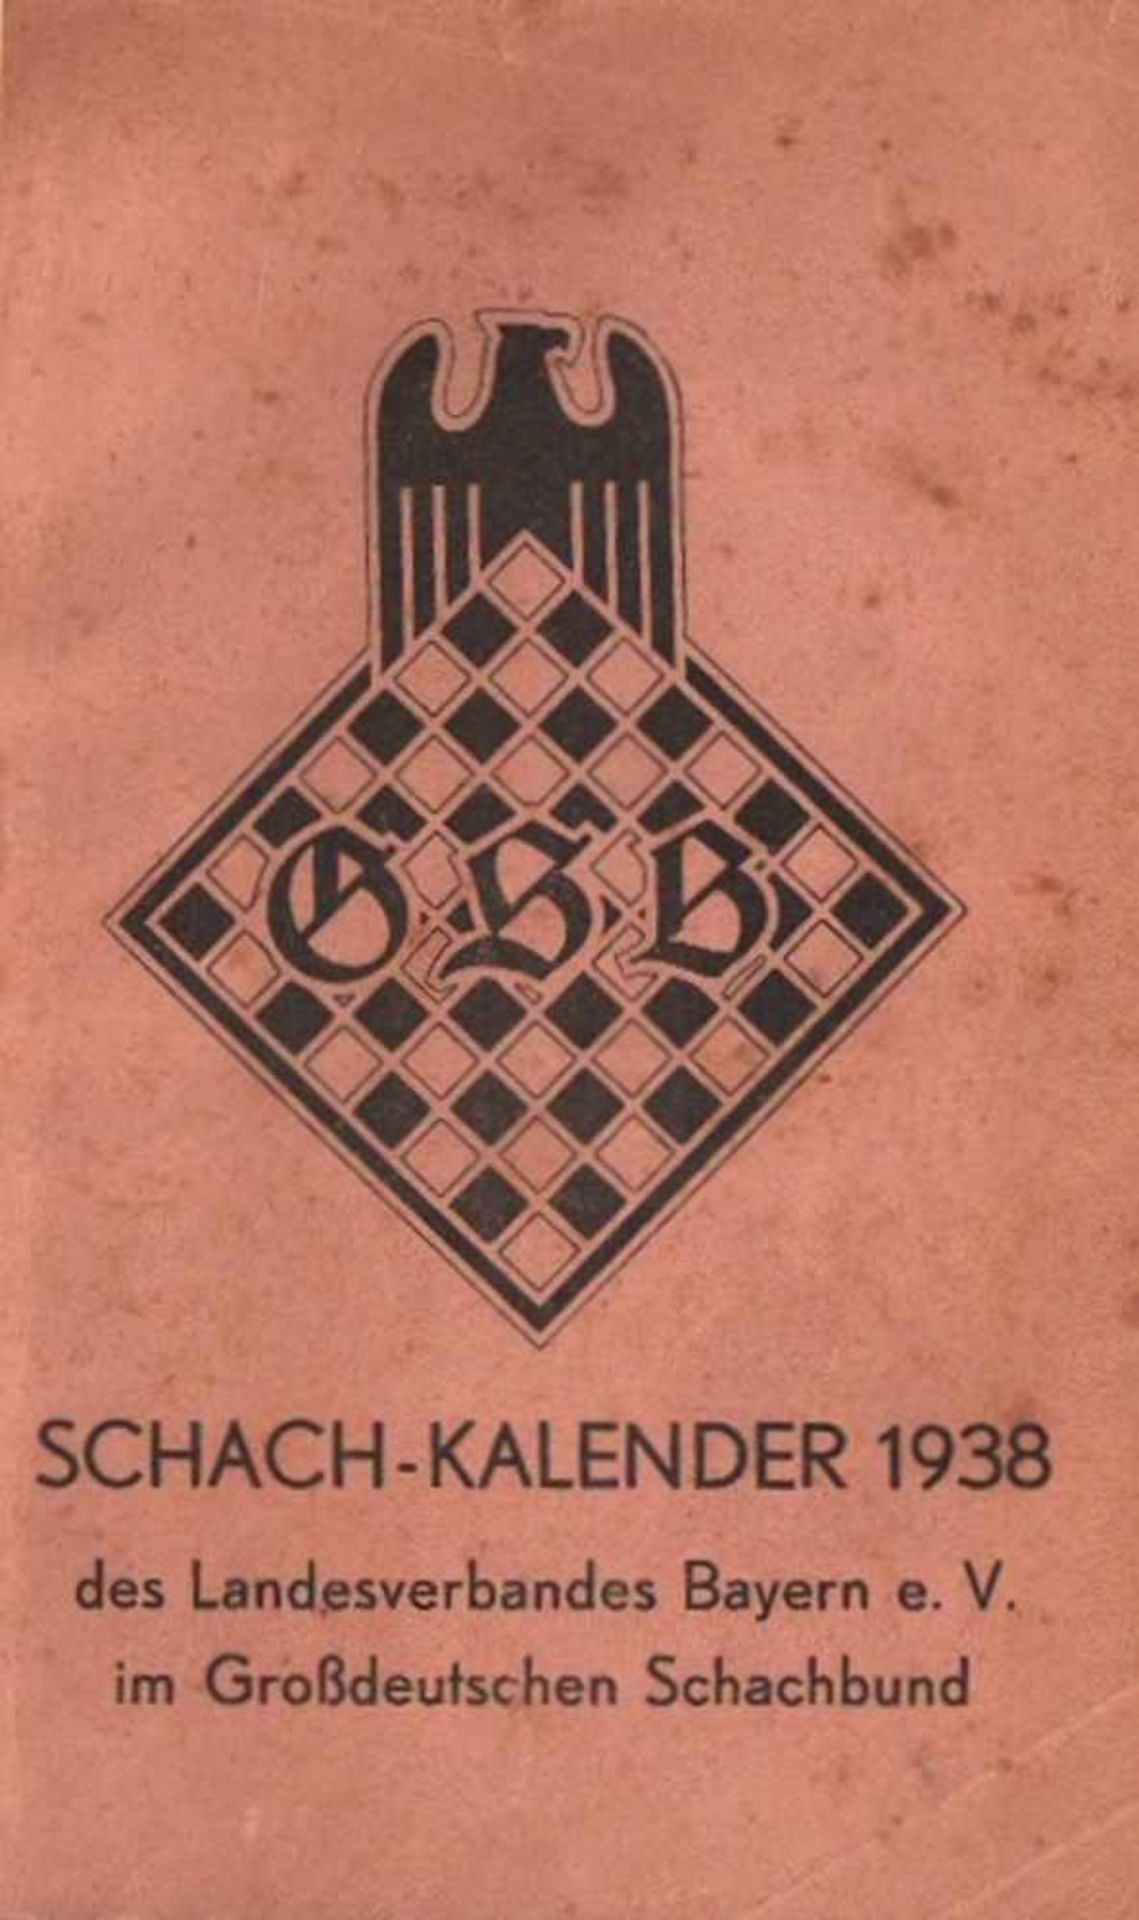 Schach - Kalender 1938 des Landesverbandes Bayerne. V. im Großdeutschen Schachbund. (Nürnberg),